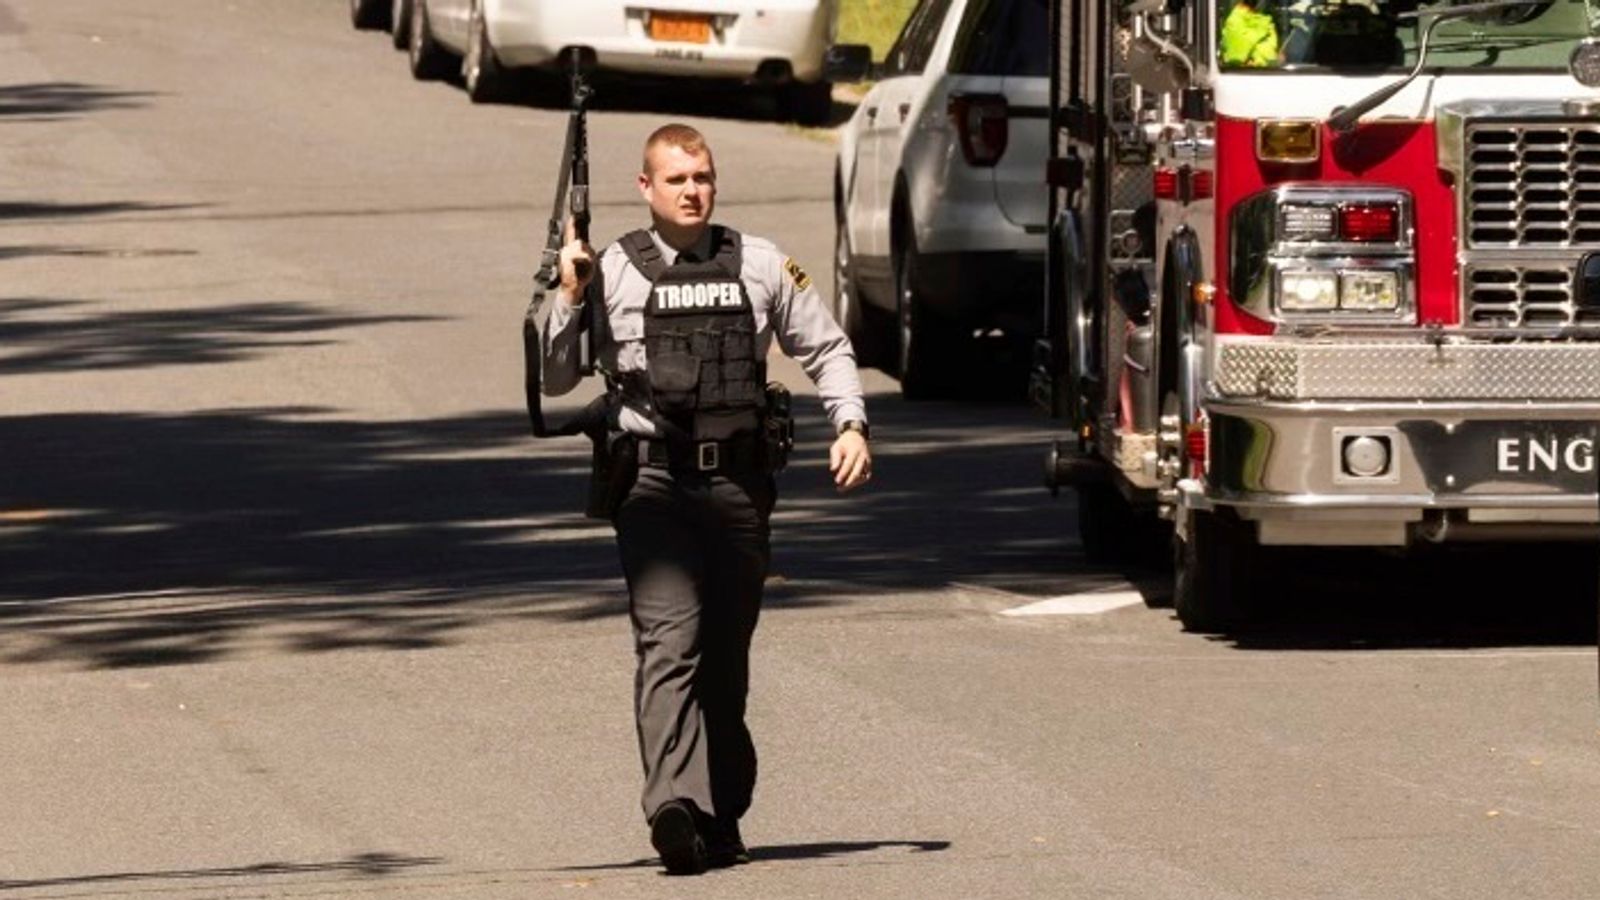 North Carolina shooting: Four police officers shot dead serving arrest warrant in Charlotte